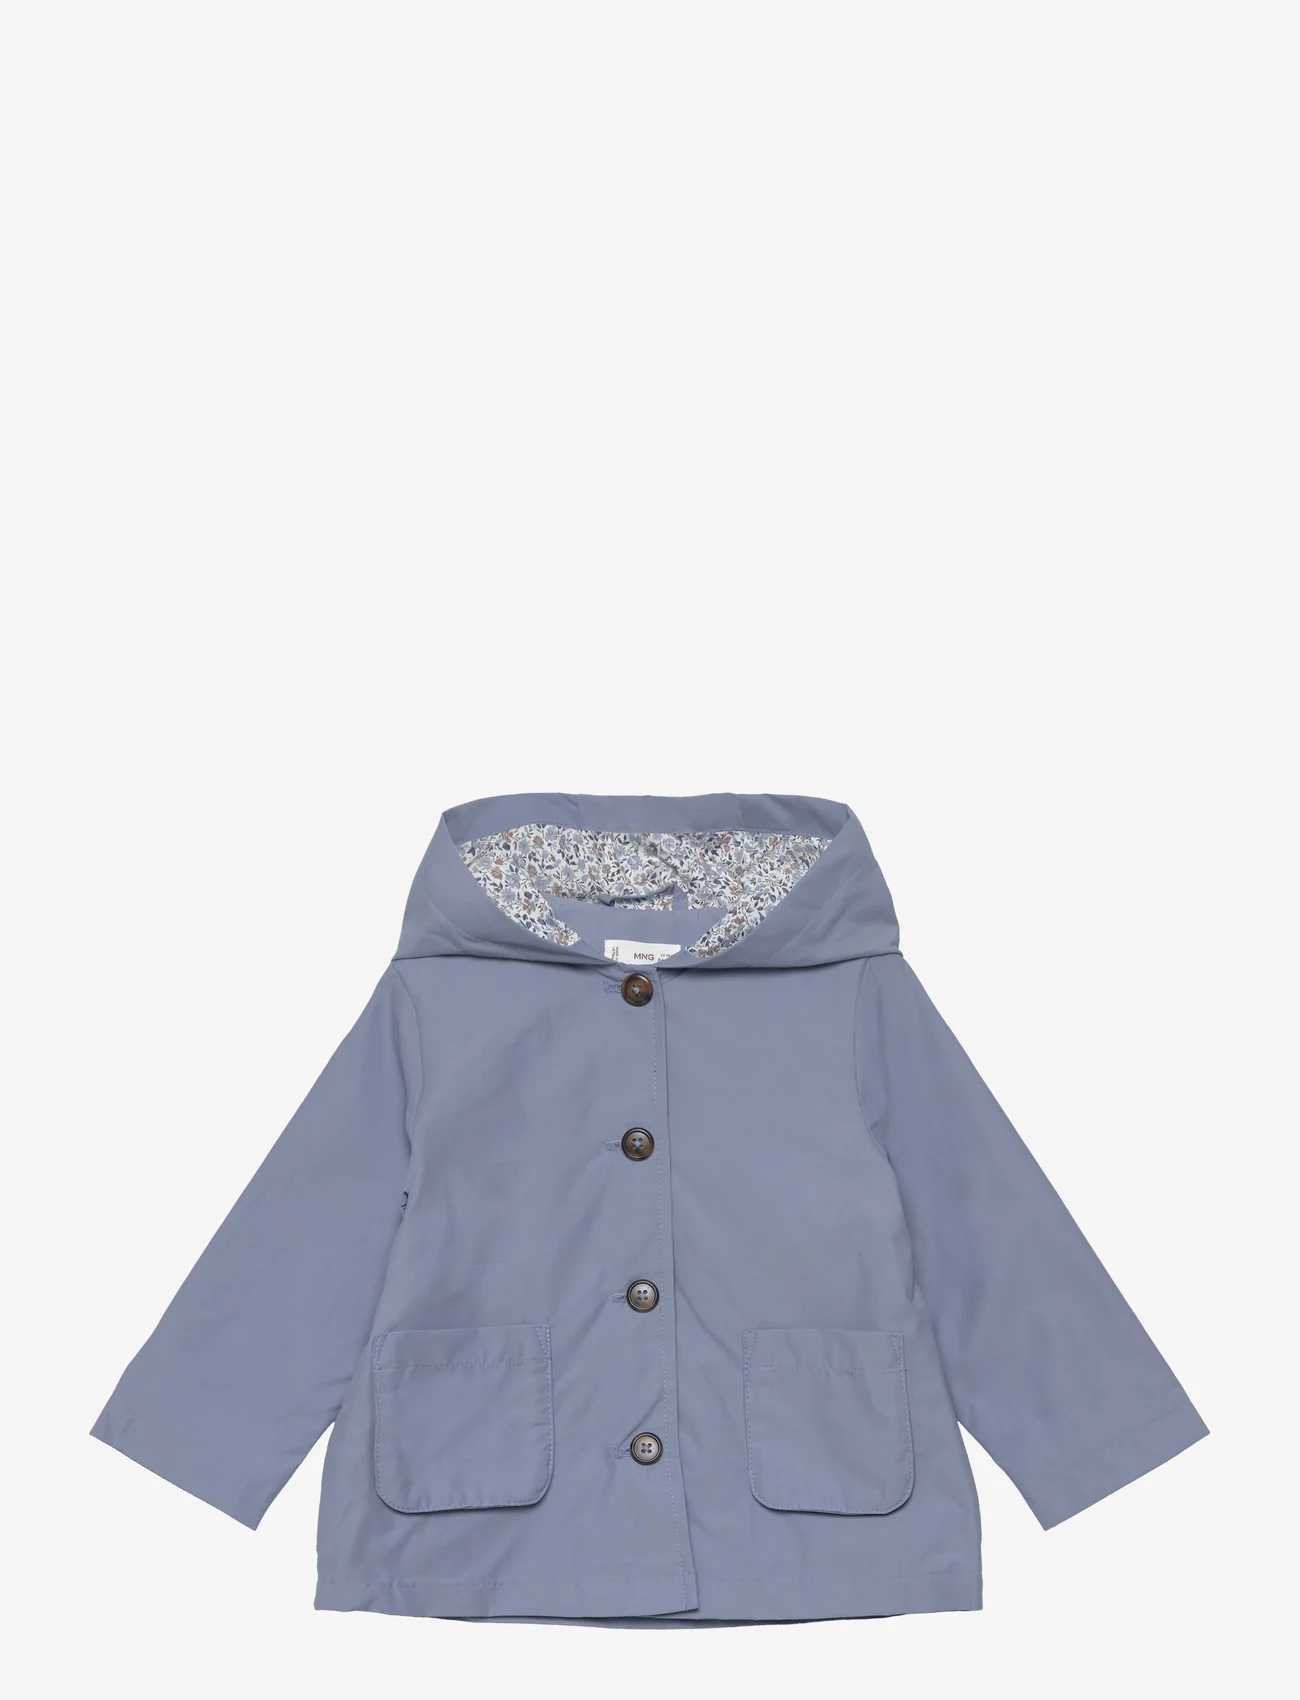 Mango - Buttoned cotton jacket - vårjackor - medium blue - 0